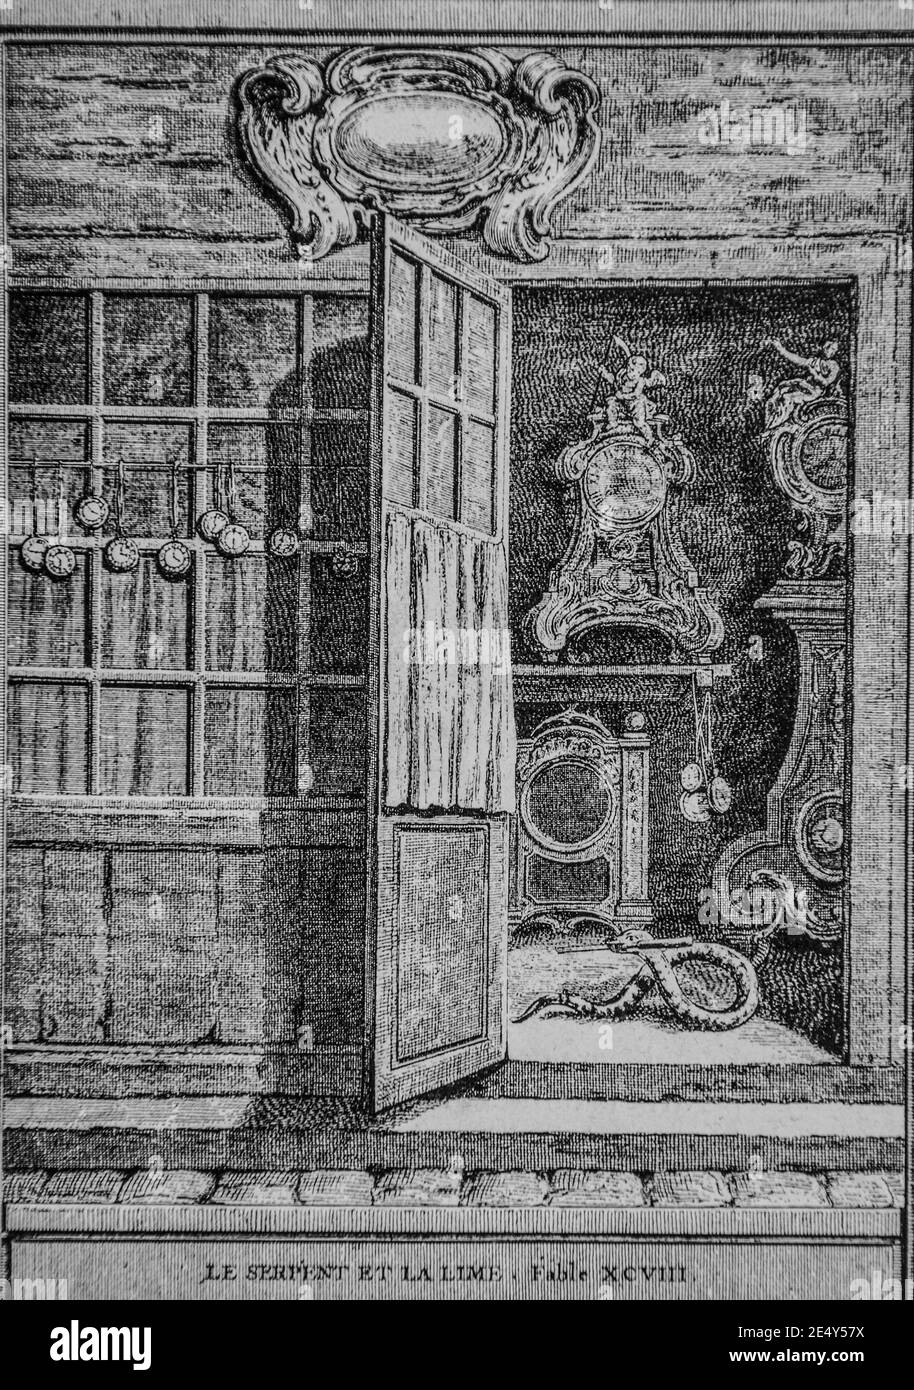 le serpent et la lime,fables de la fontaine,editeur talan,dier 1904,dessin de j.b.oudry Stock Photo